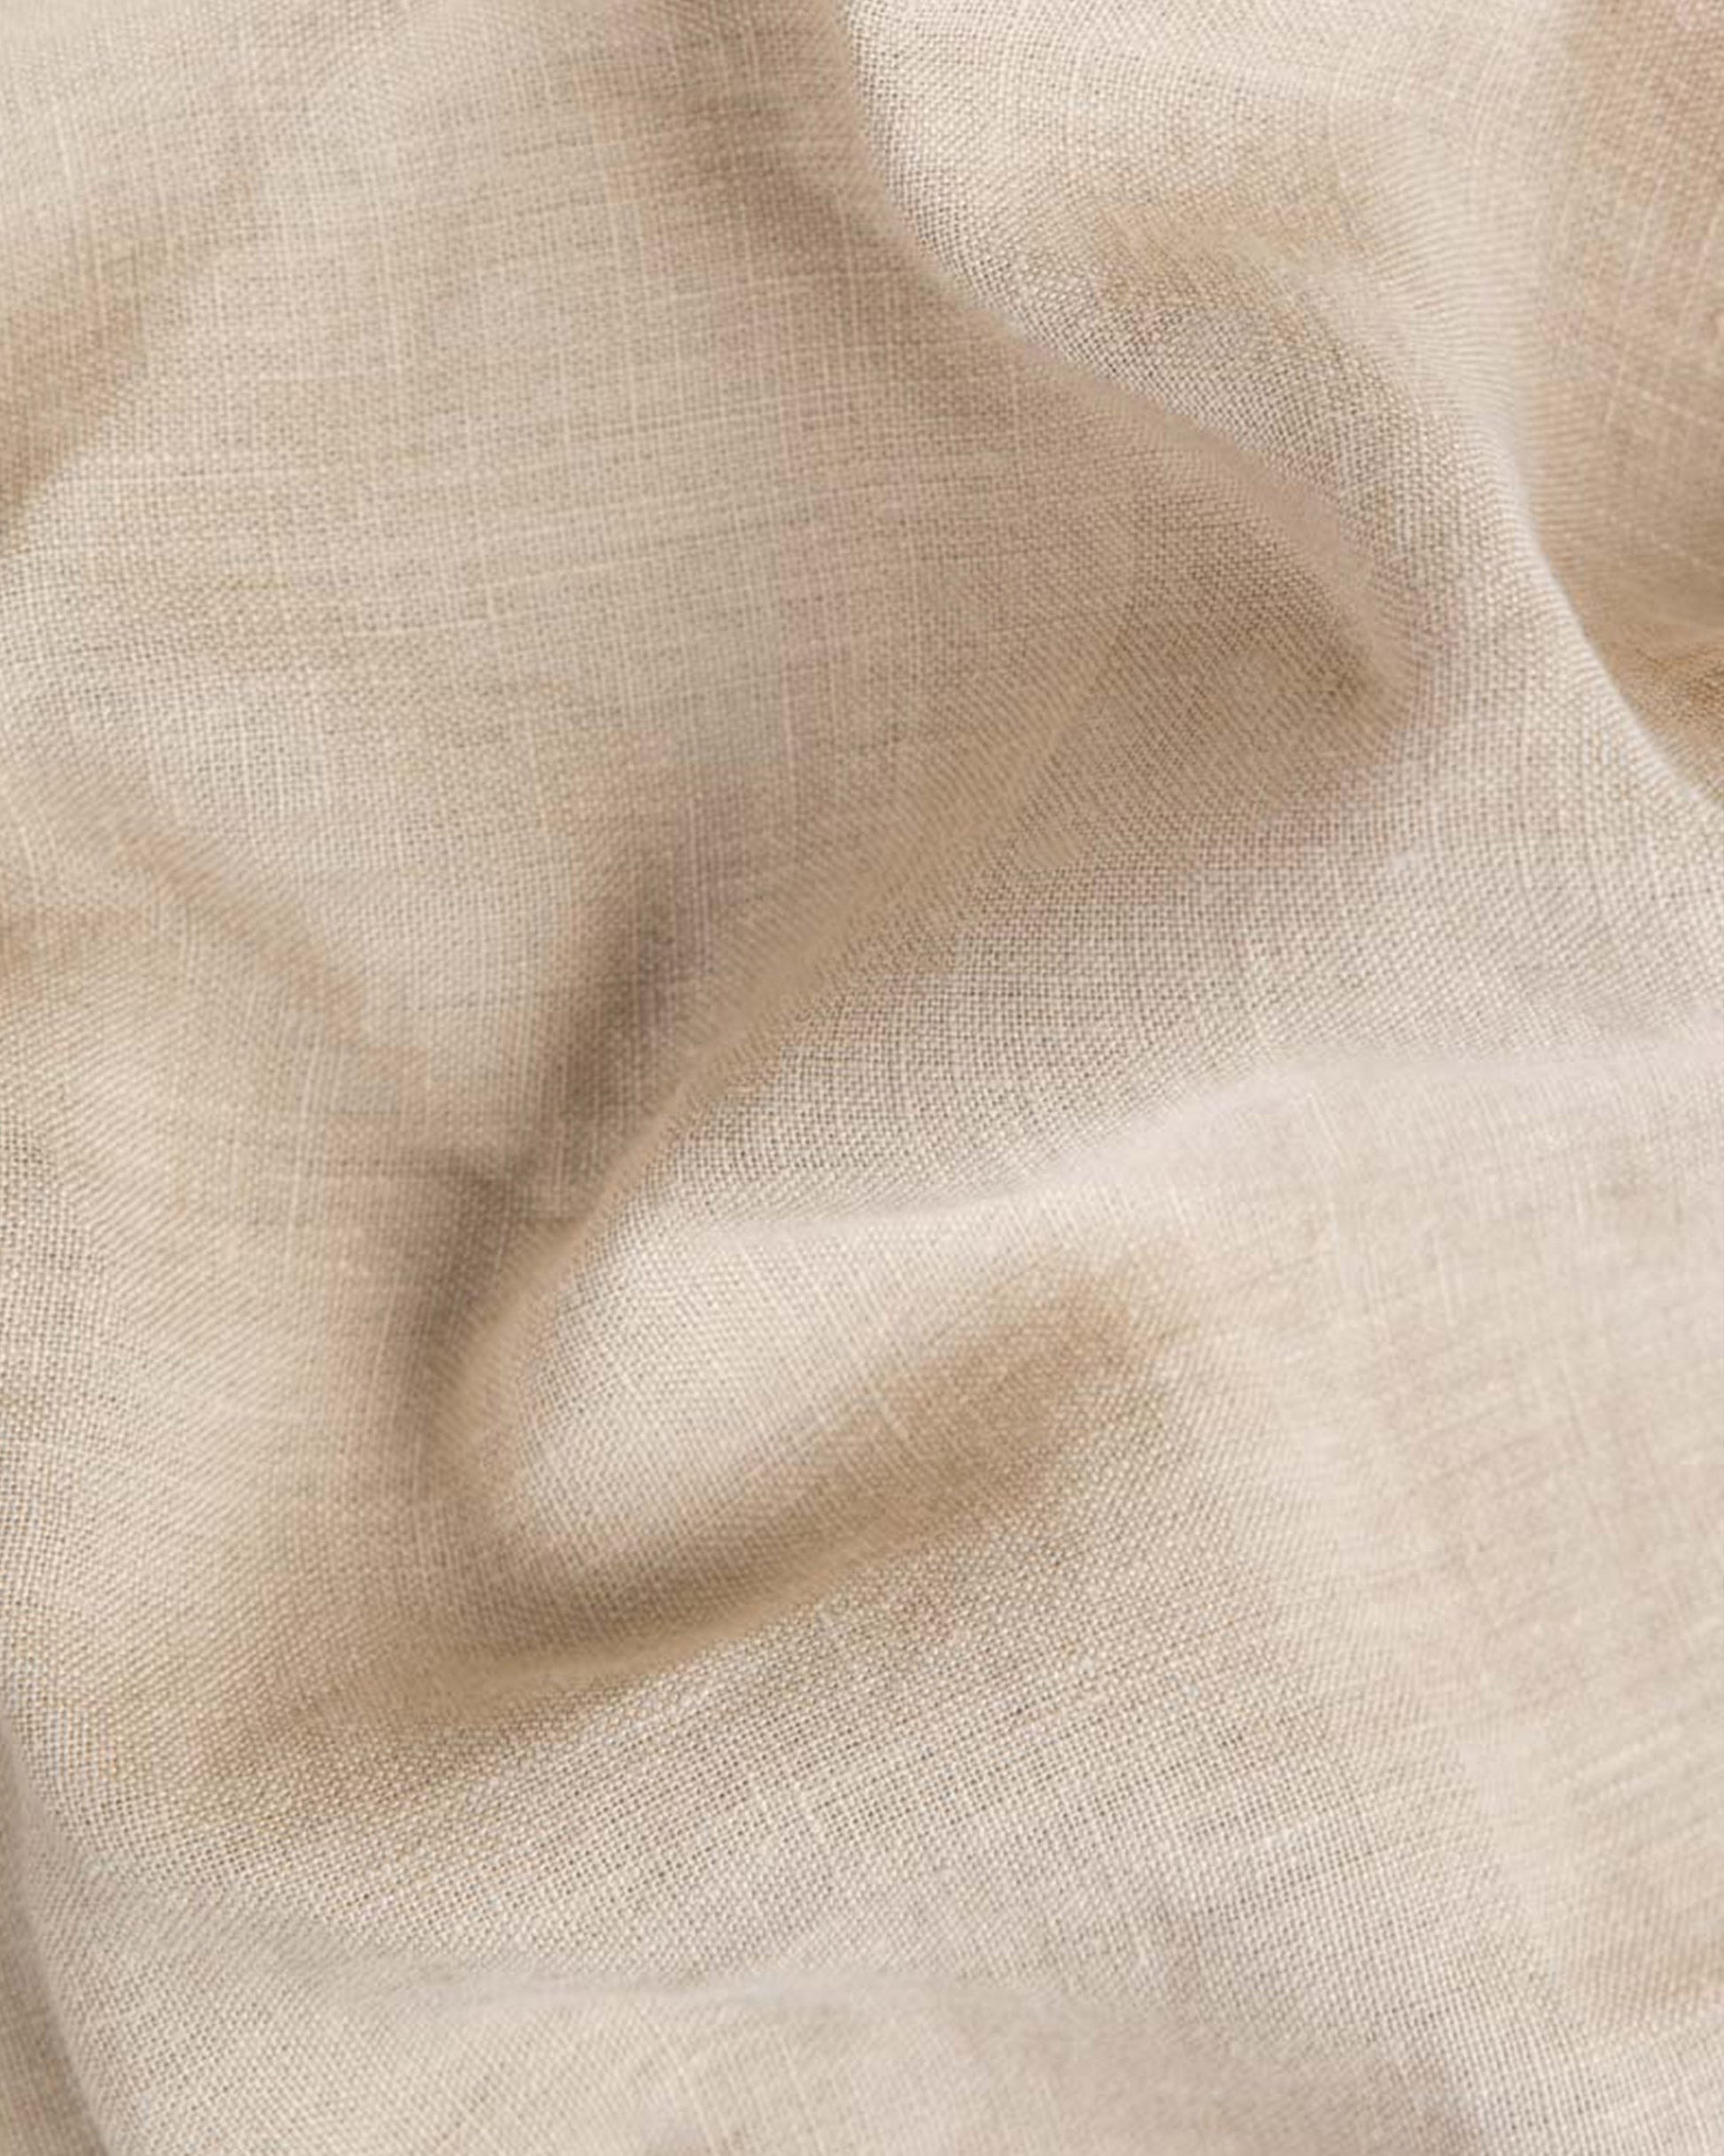 Body pillowcase in Natural linen - MagicLinen